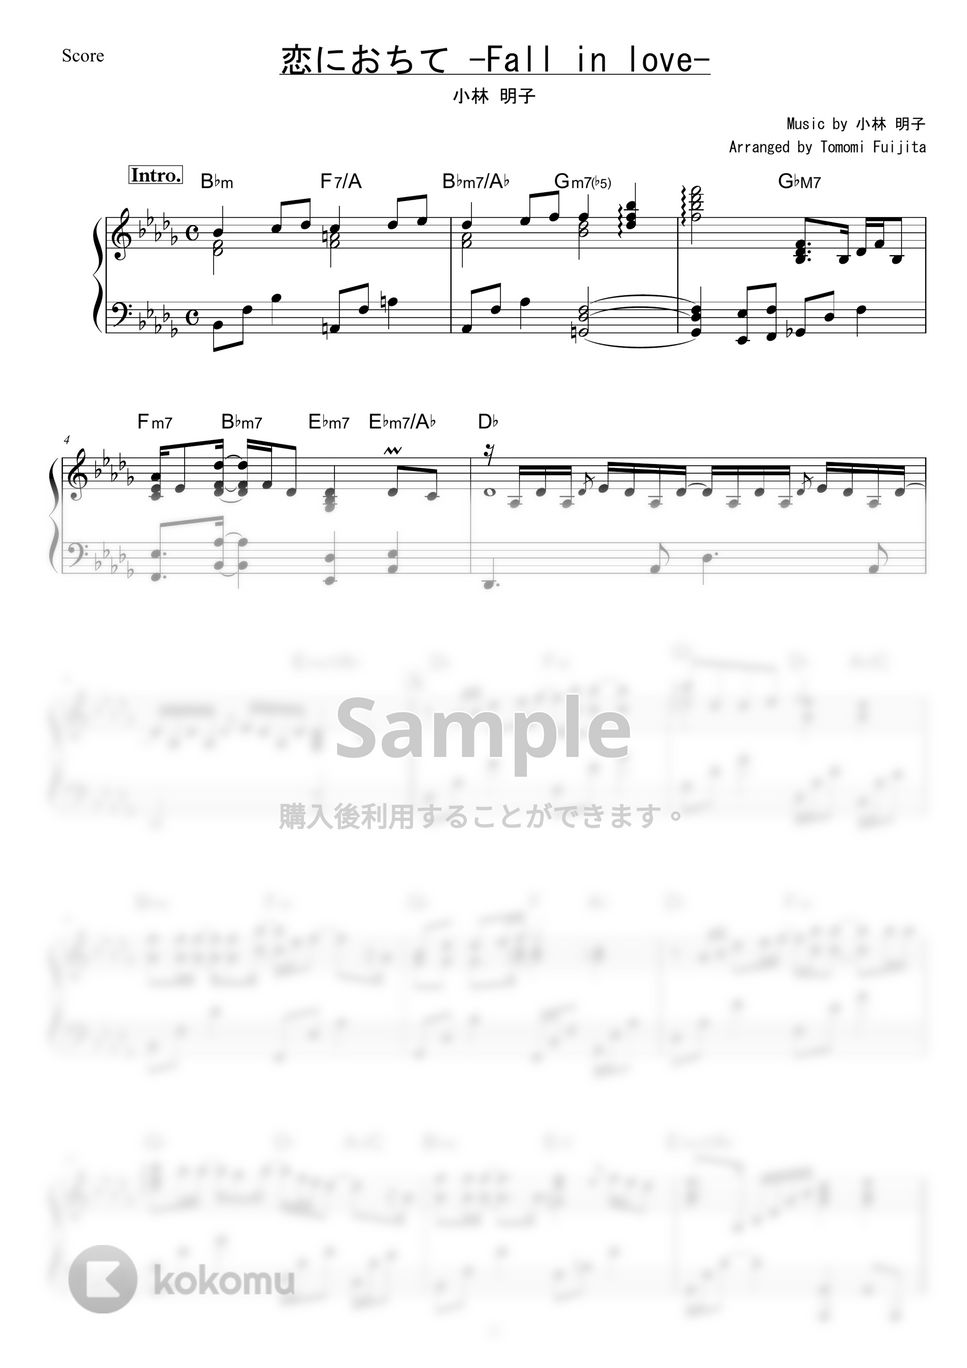 小林明子 - 恋におちて-Fall in love- by piano*score